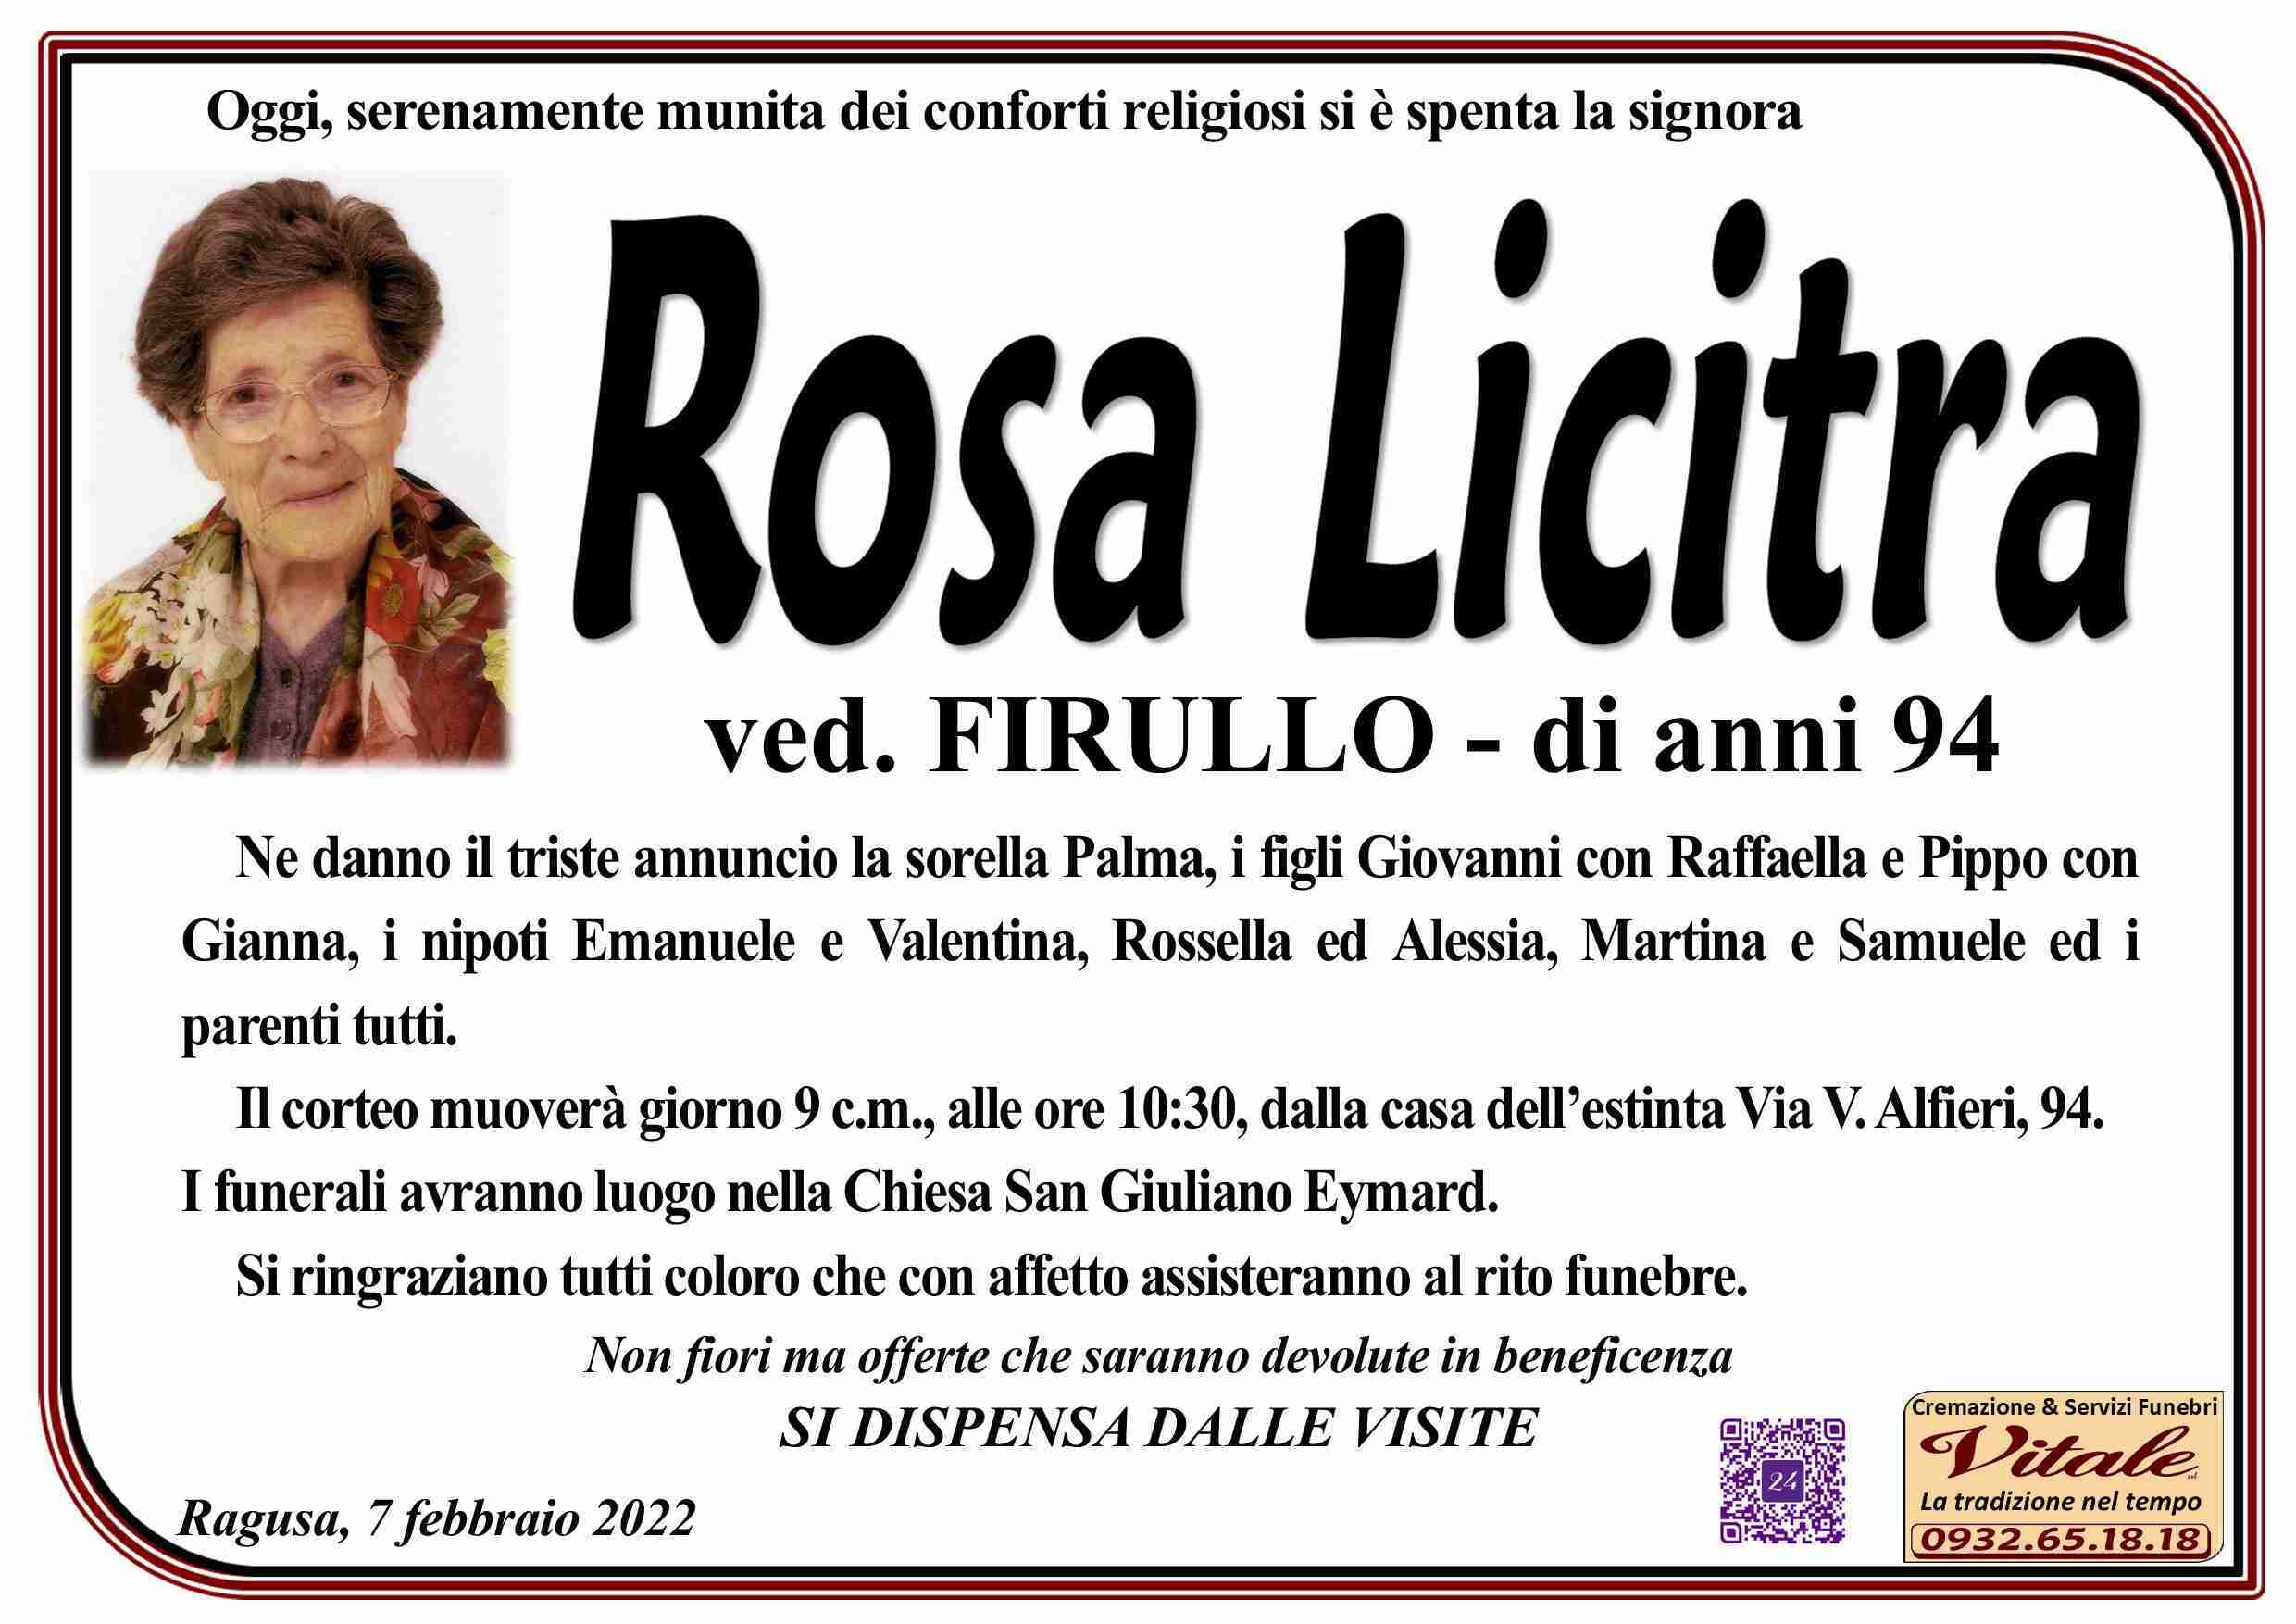 Rosa Licitra